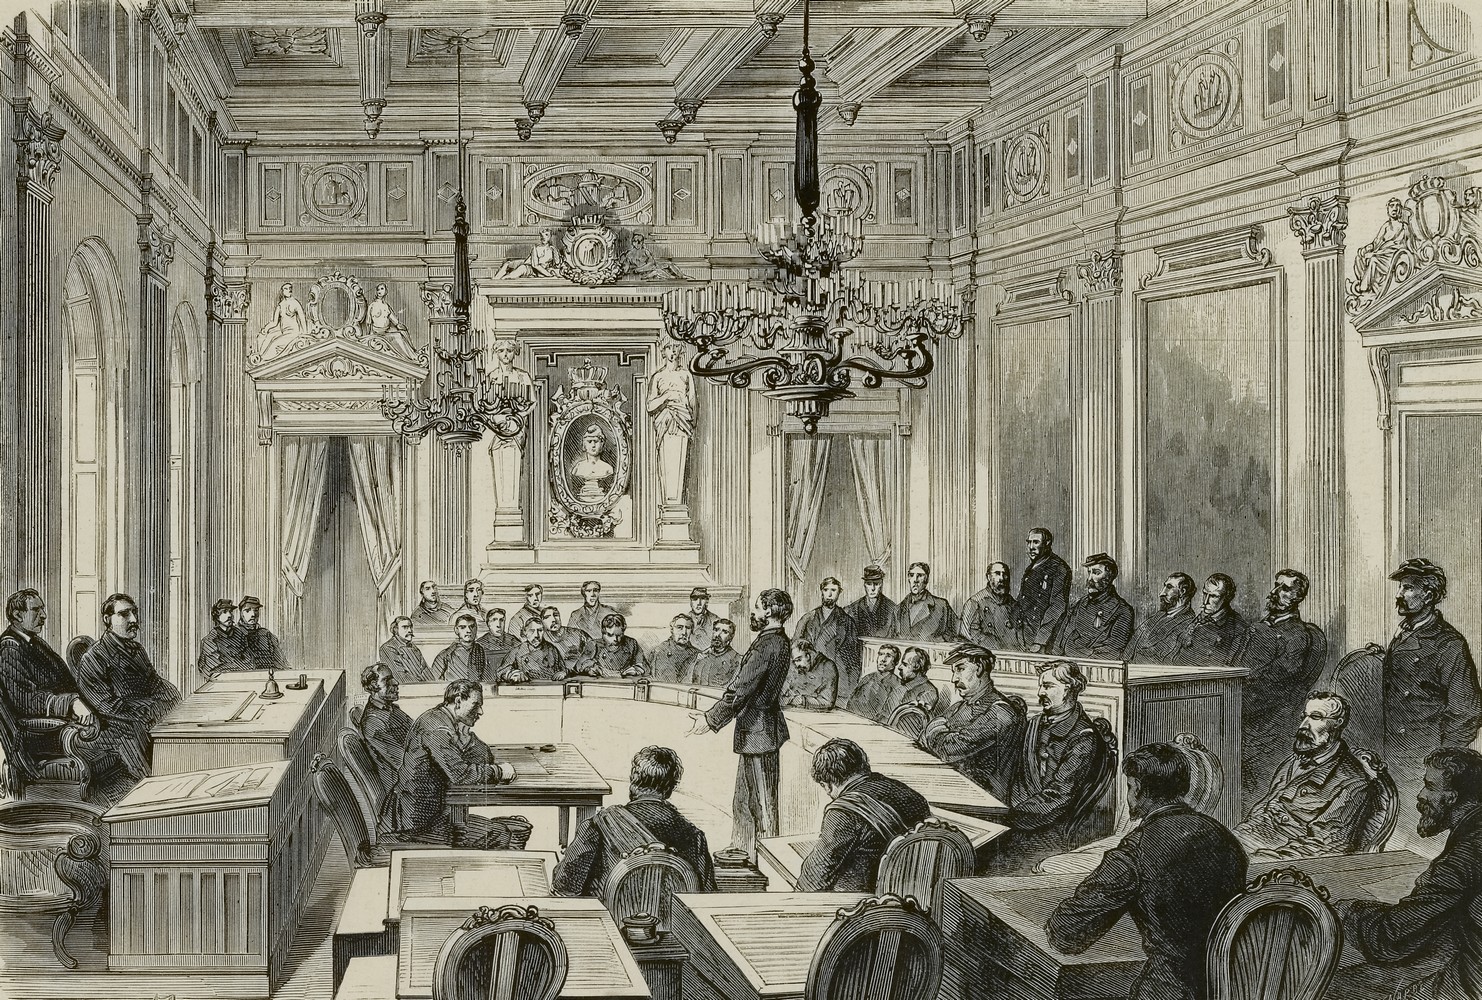 Une séance de la Commune dans la salle des Maires à l'Hôtel de Ville en 1871. - Daudenarde, Louis-Josée-Amédée , Graveur - CC0 Paris Musées / Musée Carnavalet - Histoire de Paris